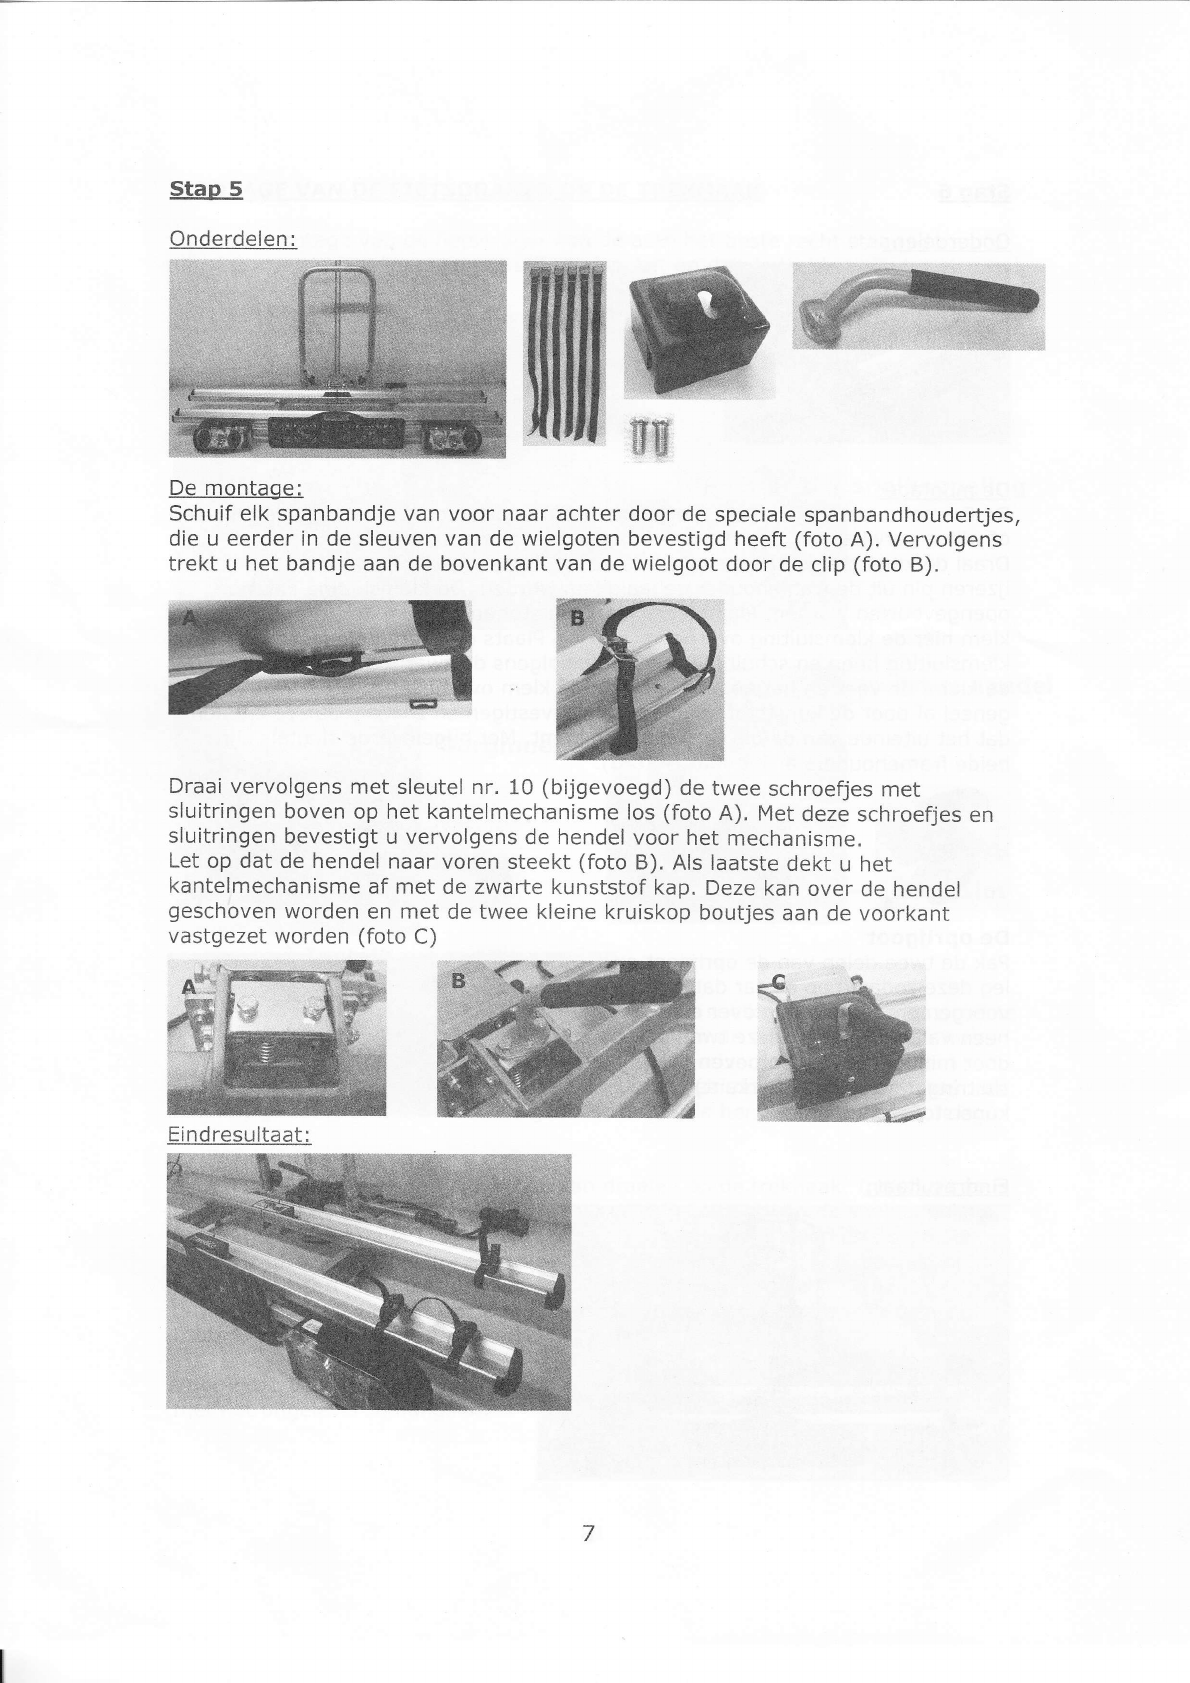 Handleiding en Co ANWB 2009 (pagina 7 van 16) (Nederlands)